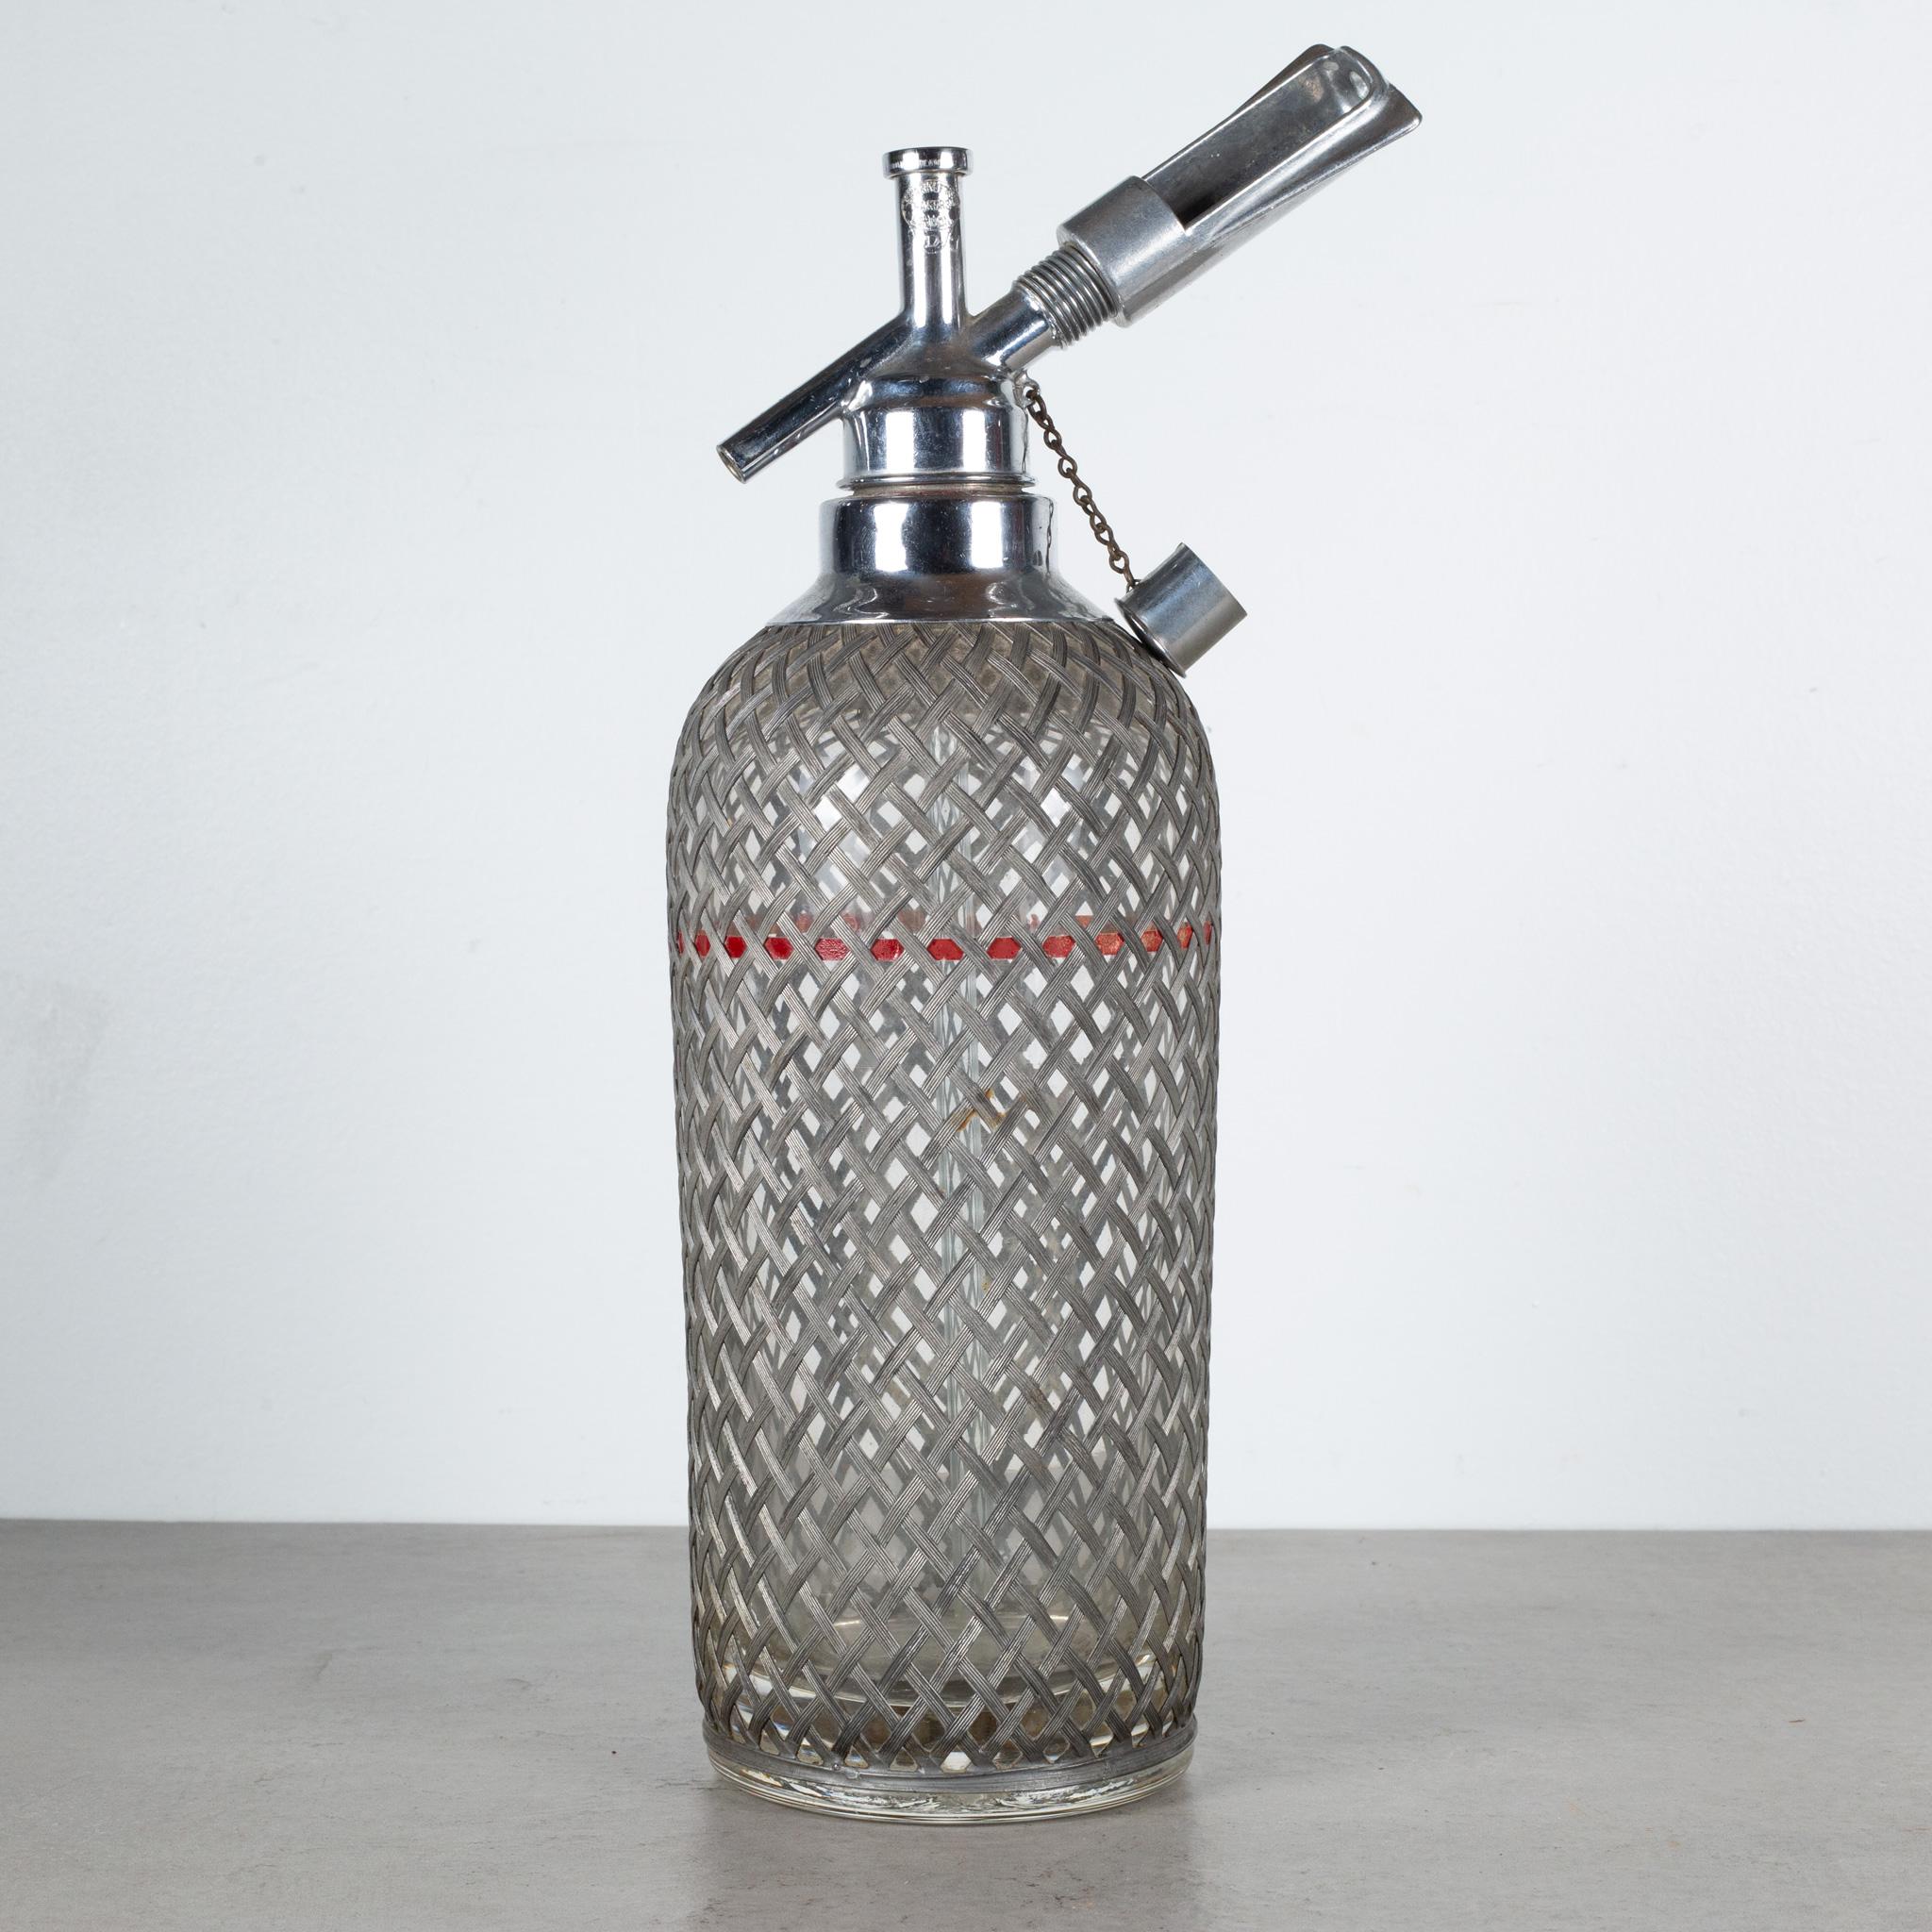 À PROPOS DE

Une bouteille d'eau de Sparklets Art Déco originale. La bouteille en verre épais est munie d'un manchon de protection en treillis métallique, de mécanismes chromés sur le dessus, d'une ligne de remplissage rouge et de la mention gravée